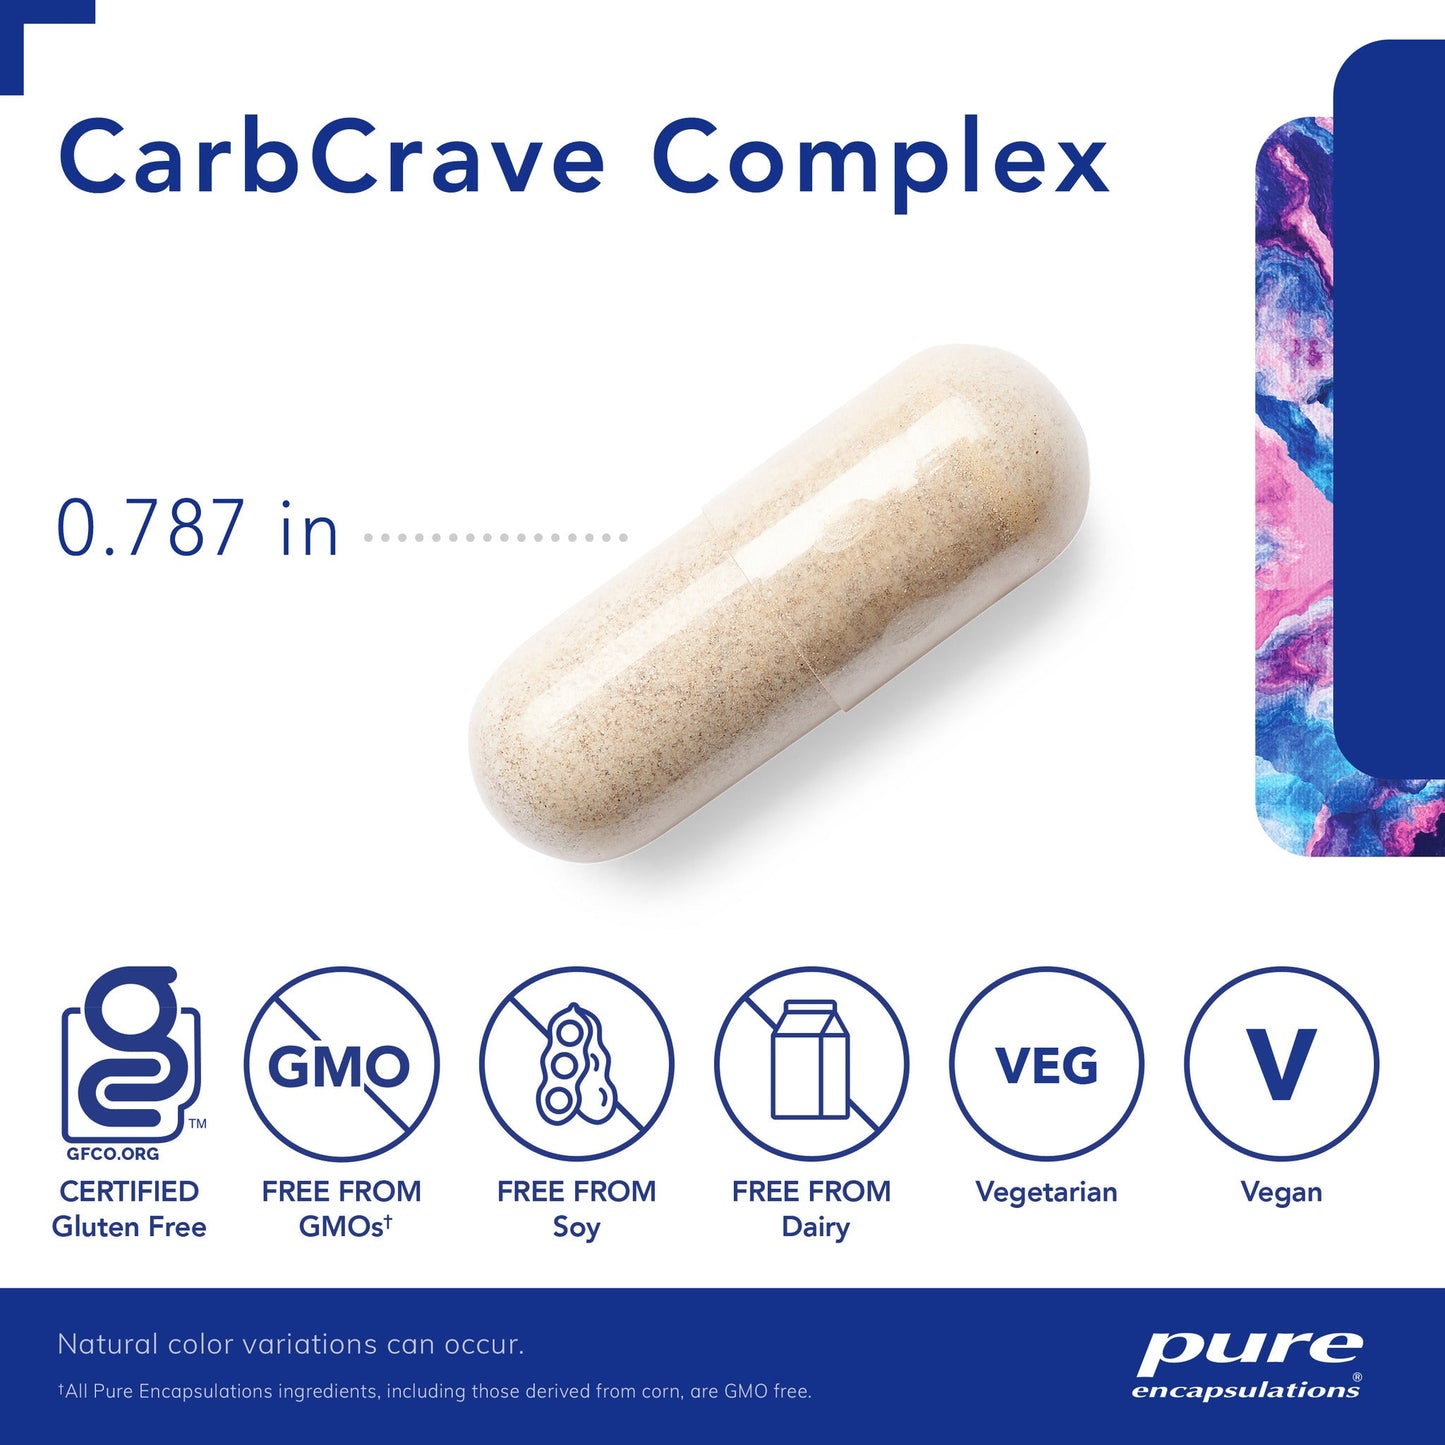 CarbCrave Complex